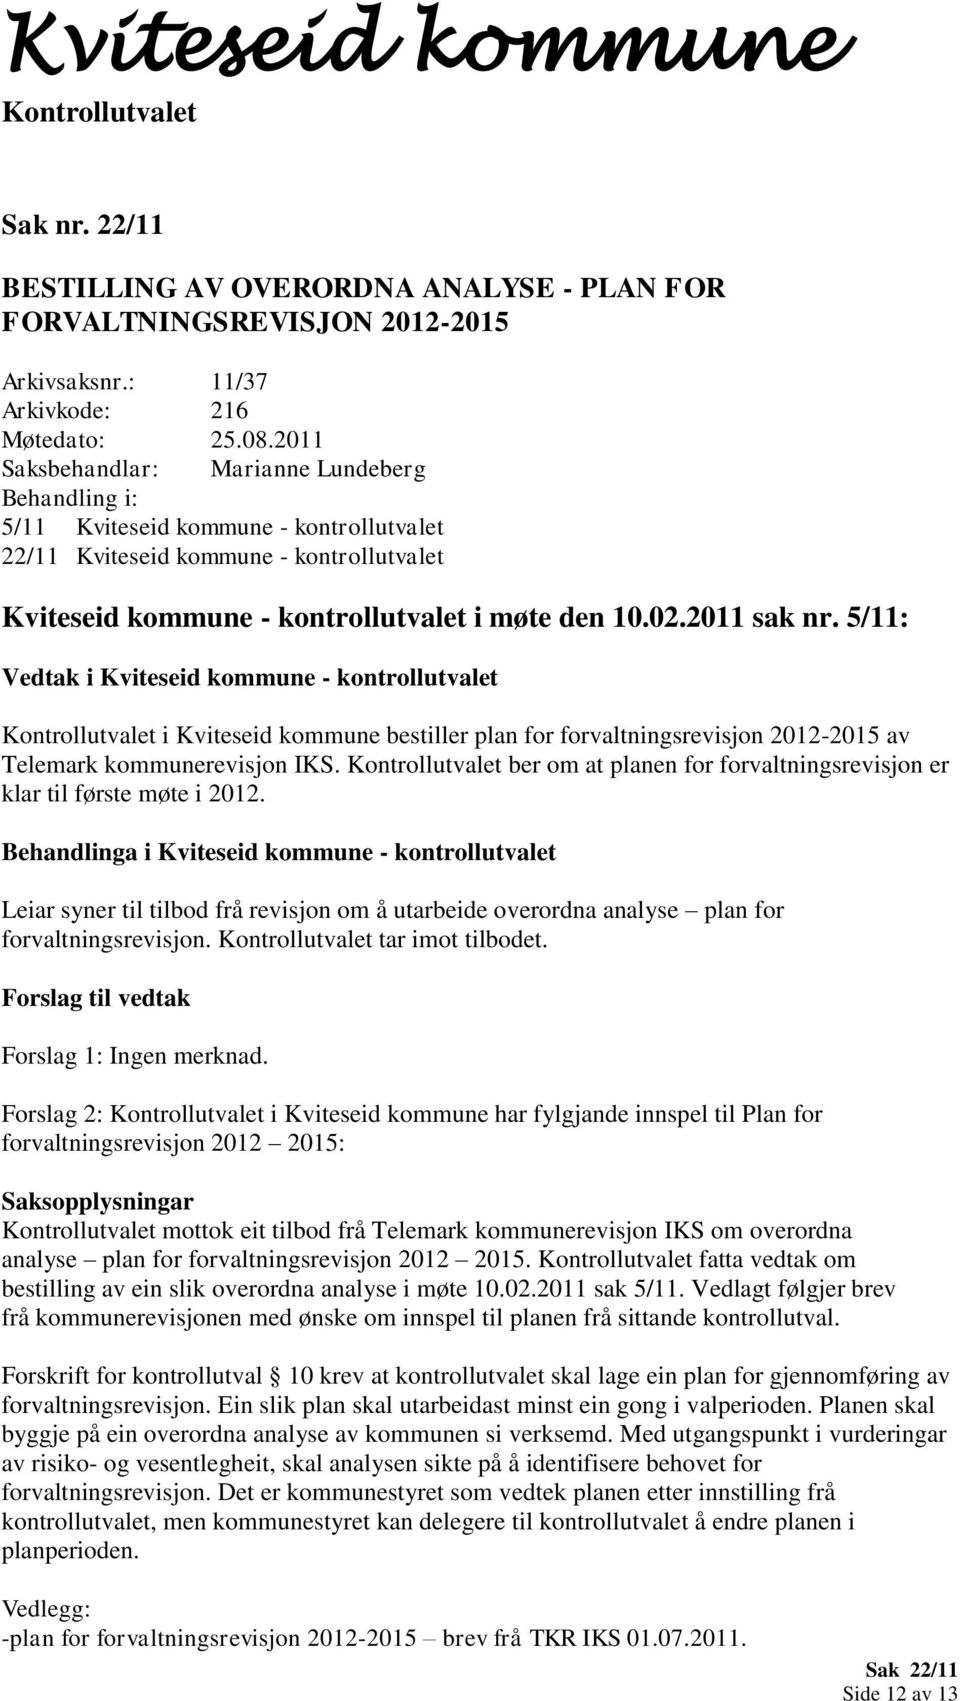 5/11: Vedtak i Kviteseid kommune - kontrollutvalet i Kviteseid kommune bestiller plan for forvaltningsrevisjon 2012-2015 av Telemark kommunerevisjon IKS.